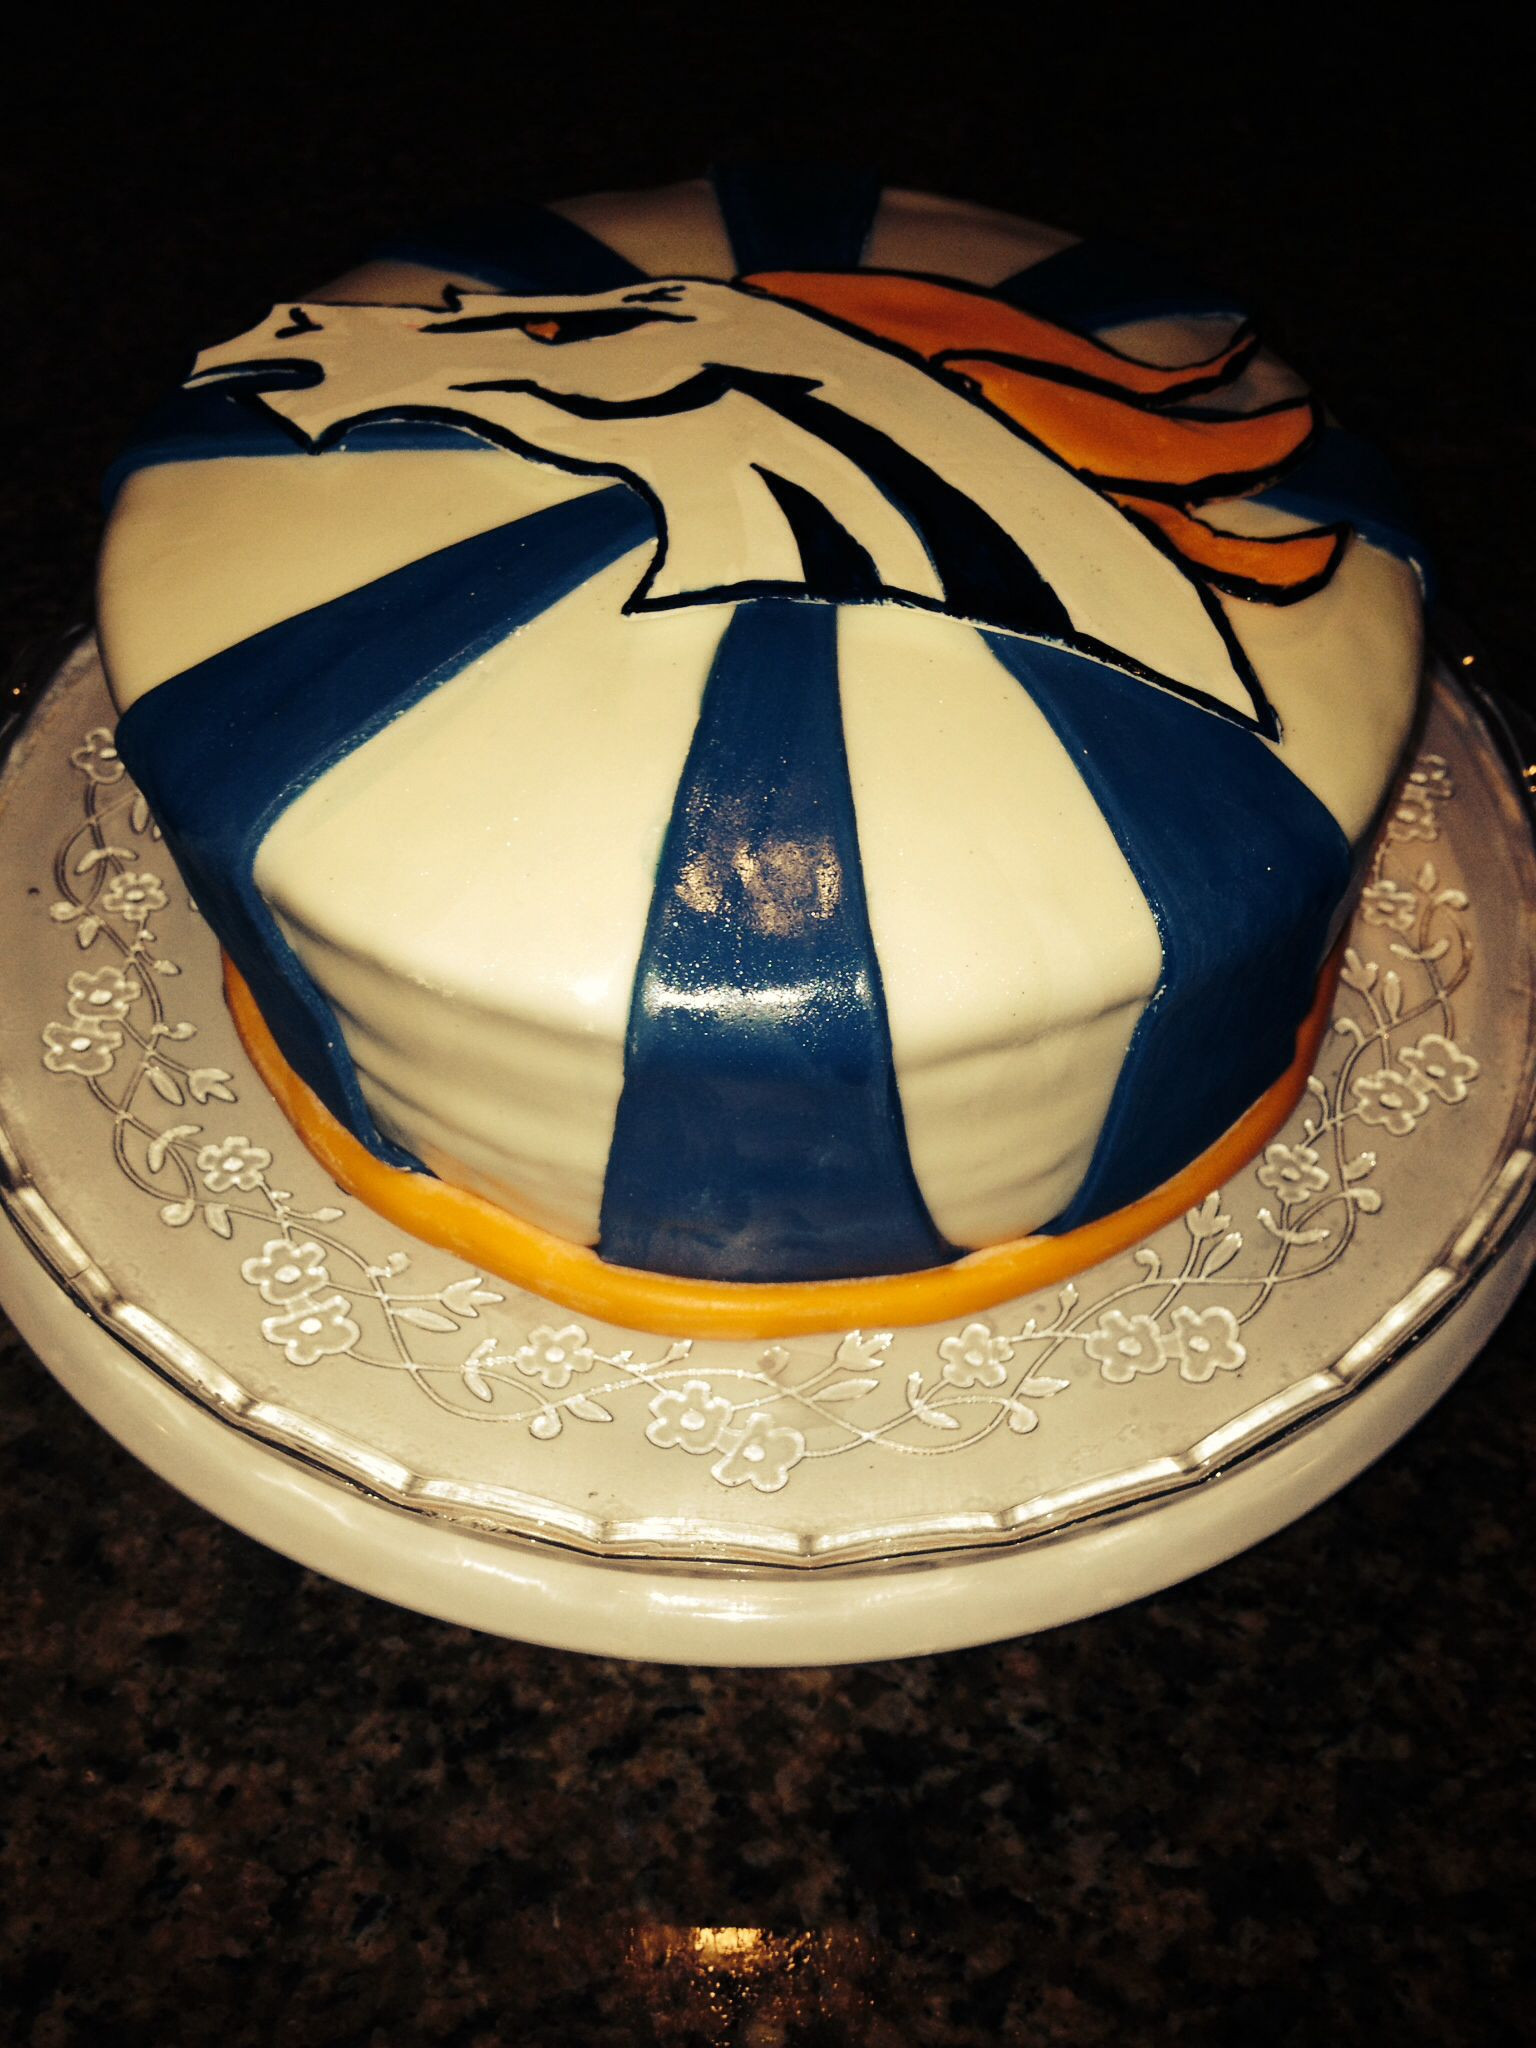 Denver Broncos Birthday Cake
 Denver Broncos Birthday Cake With images